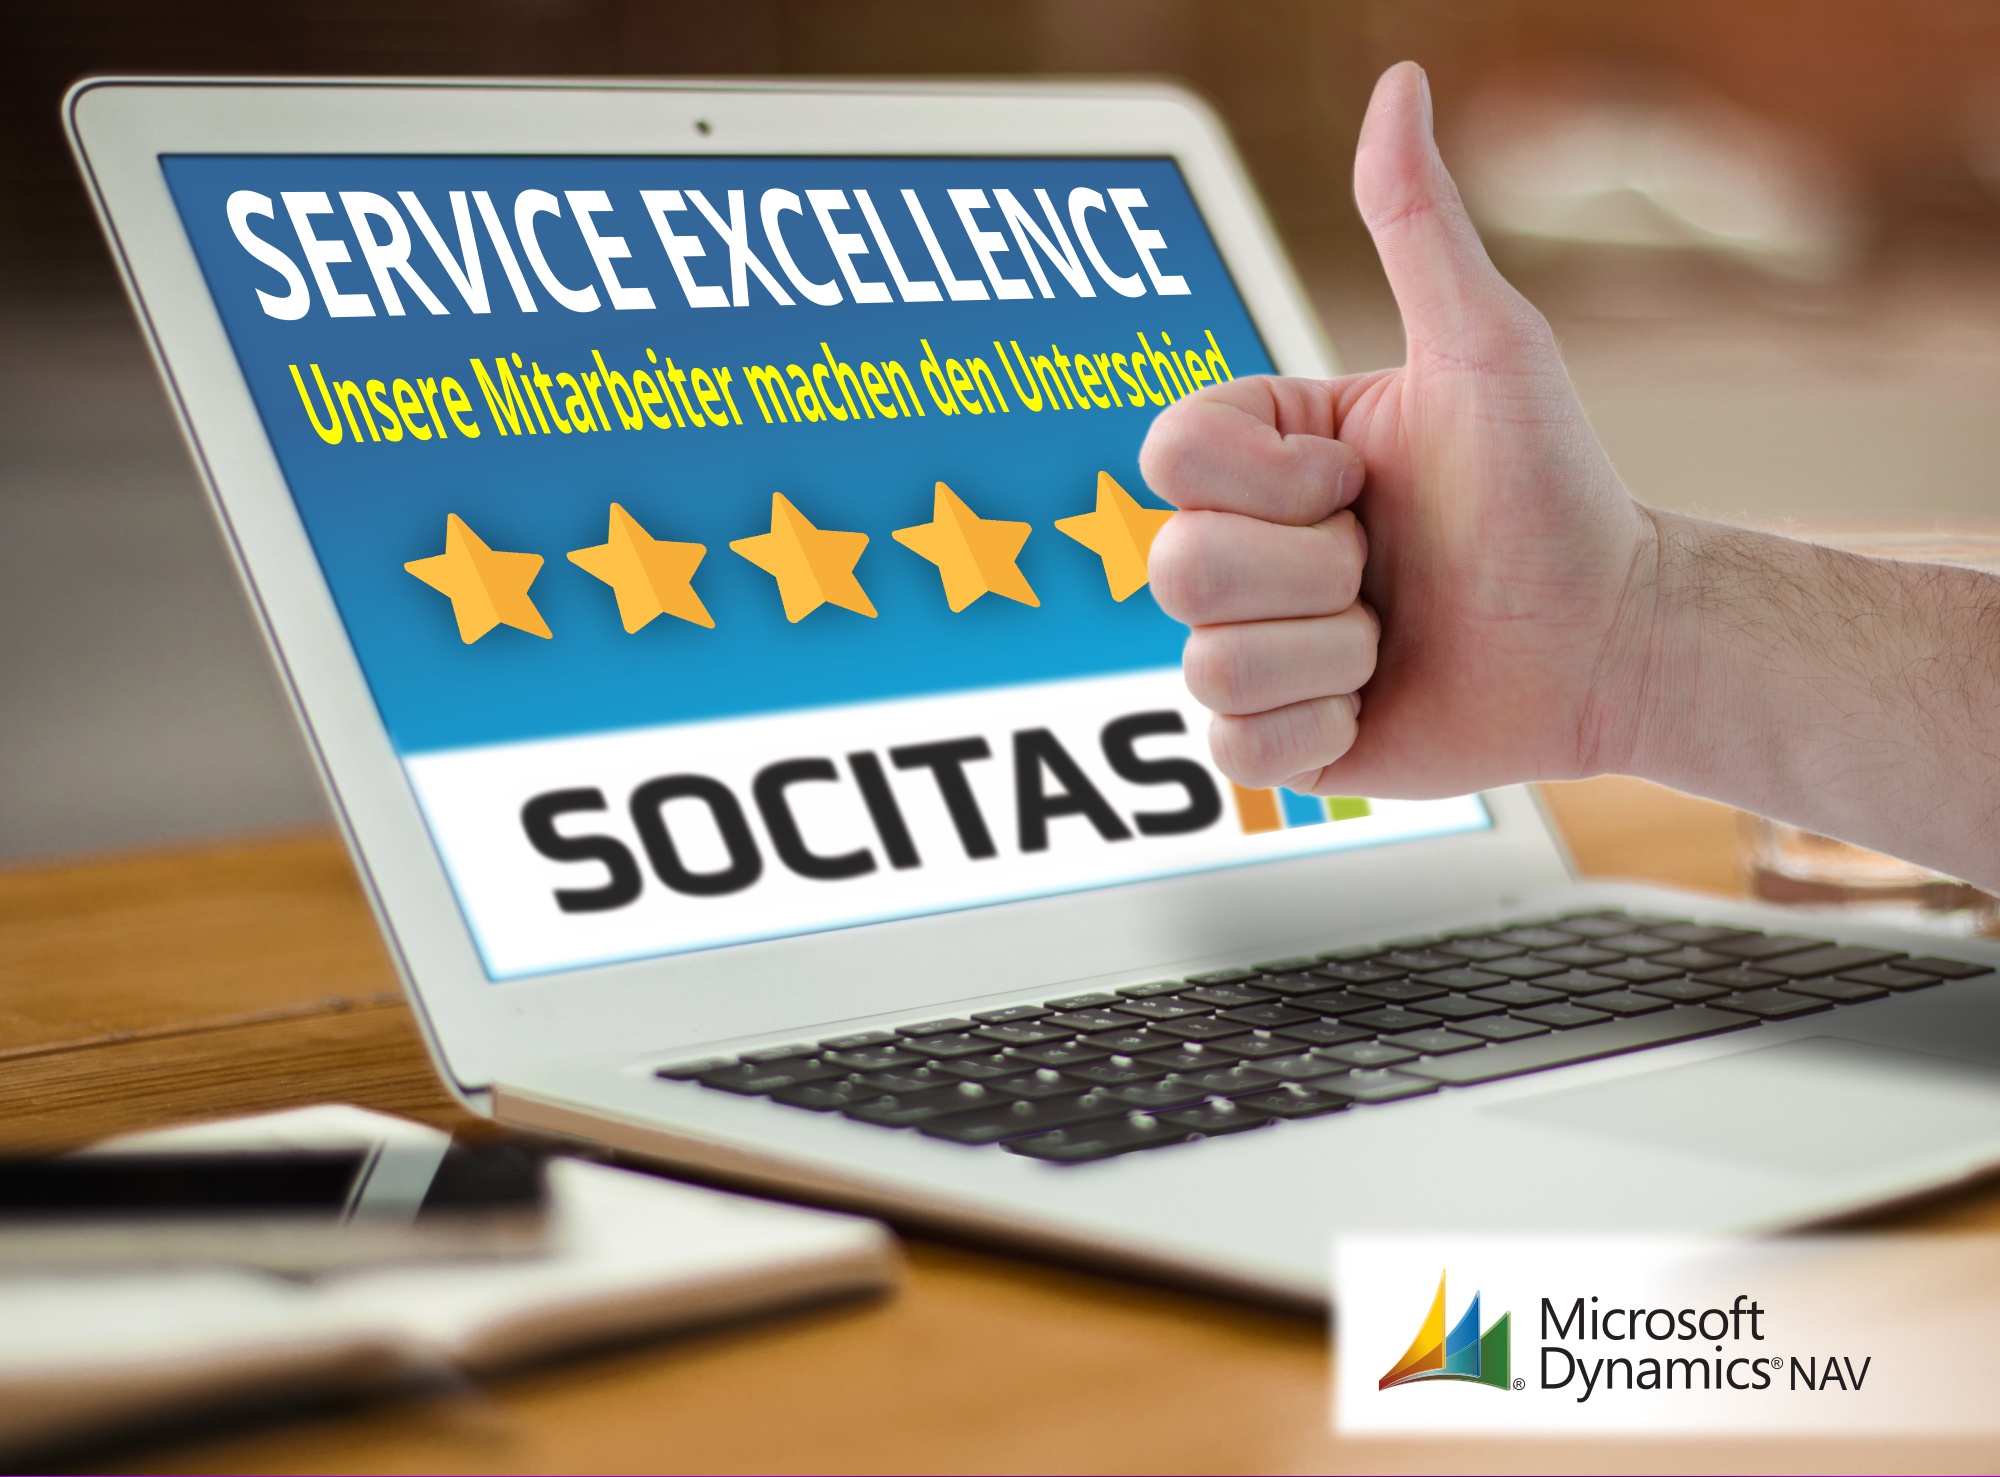 SOCITAS Service Excellence